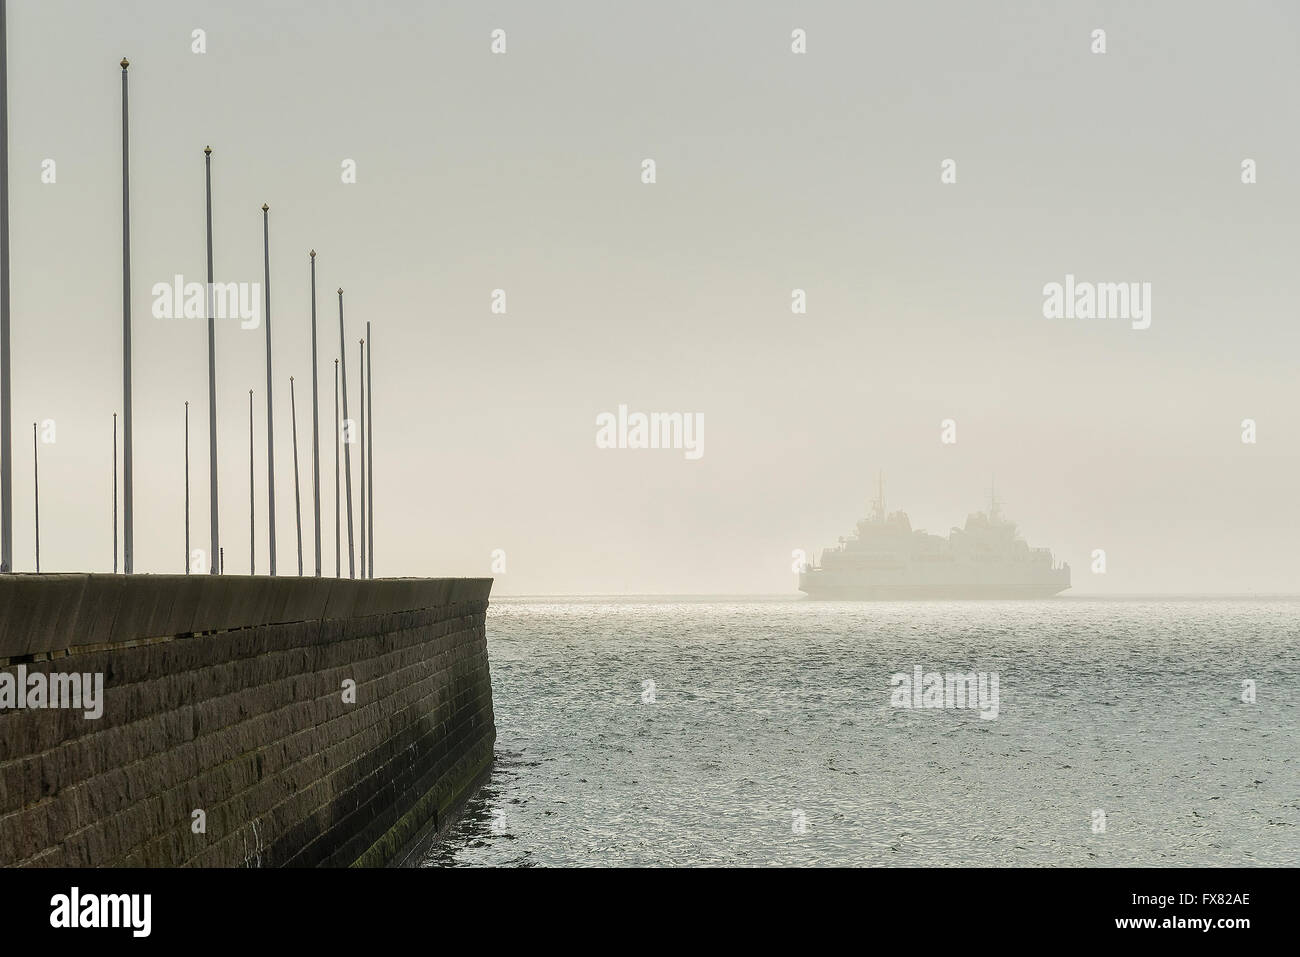 Eine Personenfähre segelt in den Nebel nach dem Ausscheiden aus der Sicherheit des Hafens Stockfoto